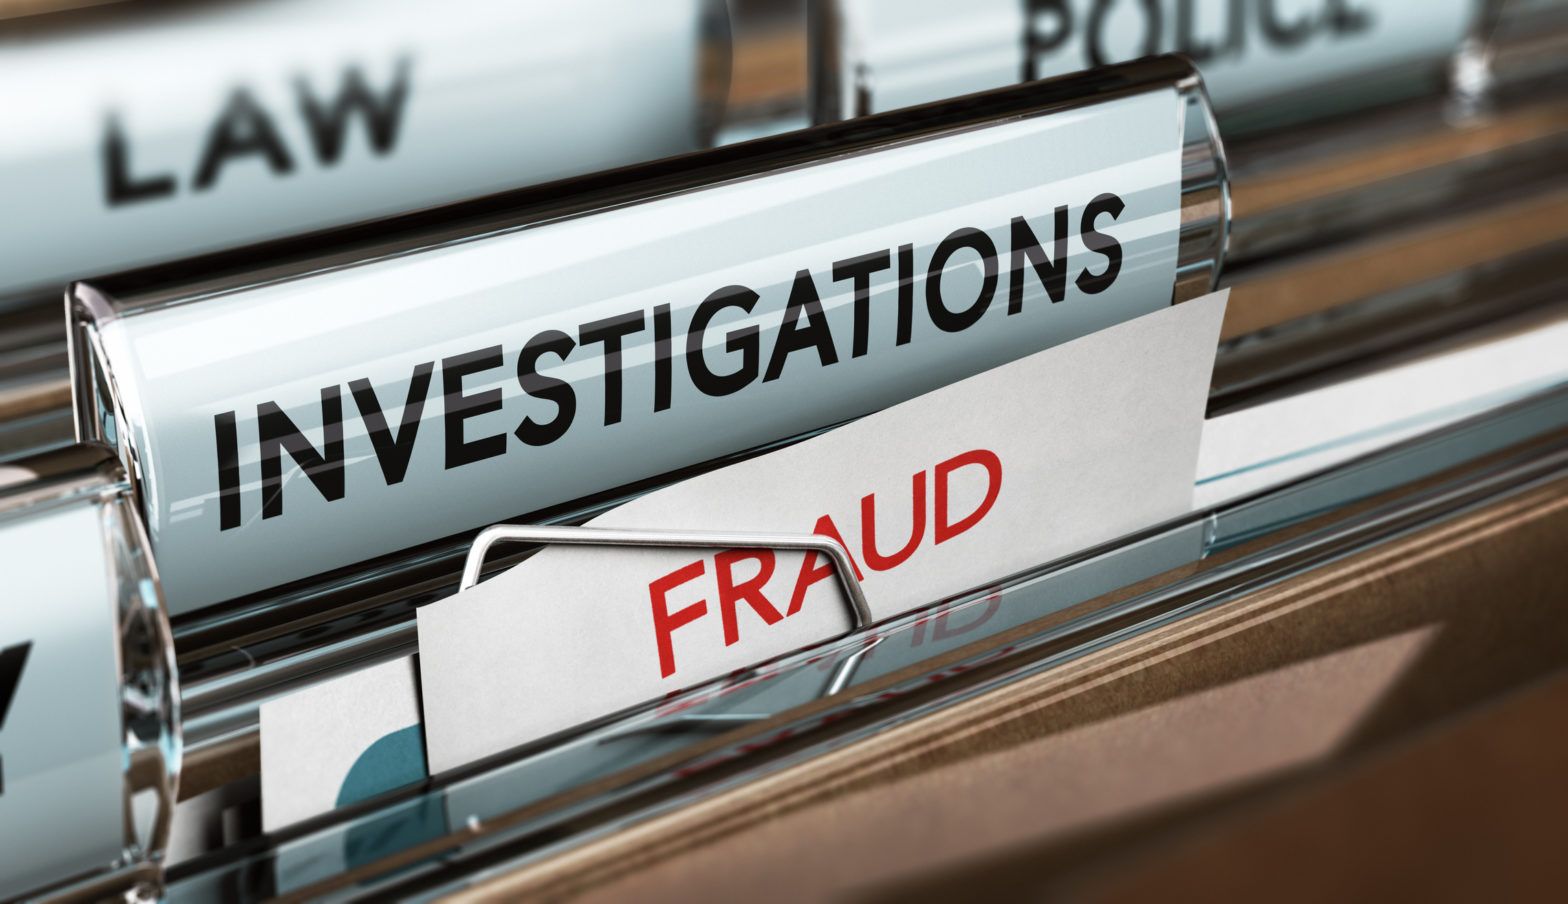 Carmignac refutes tax fraud claims